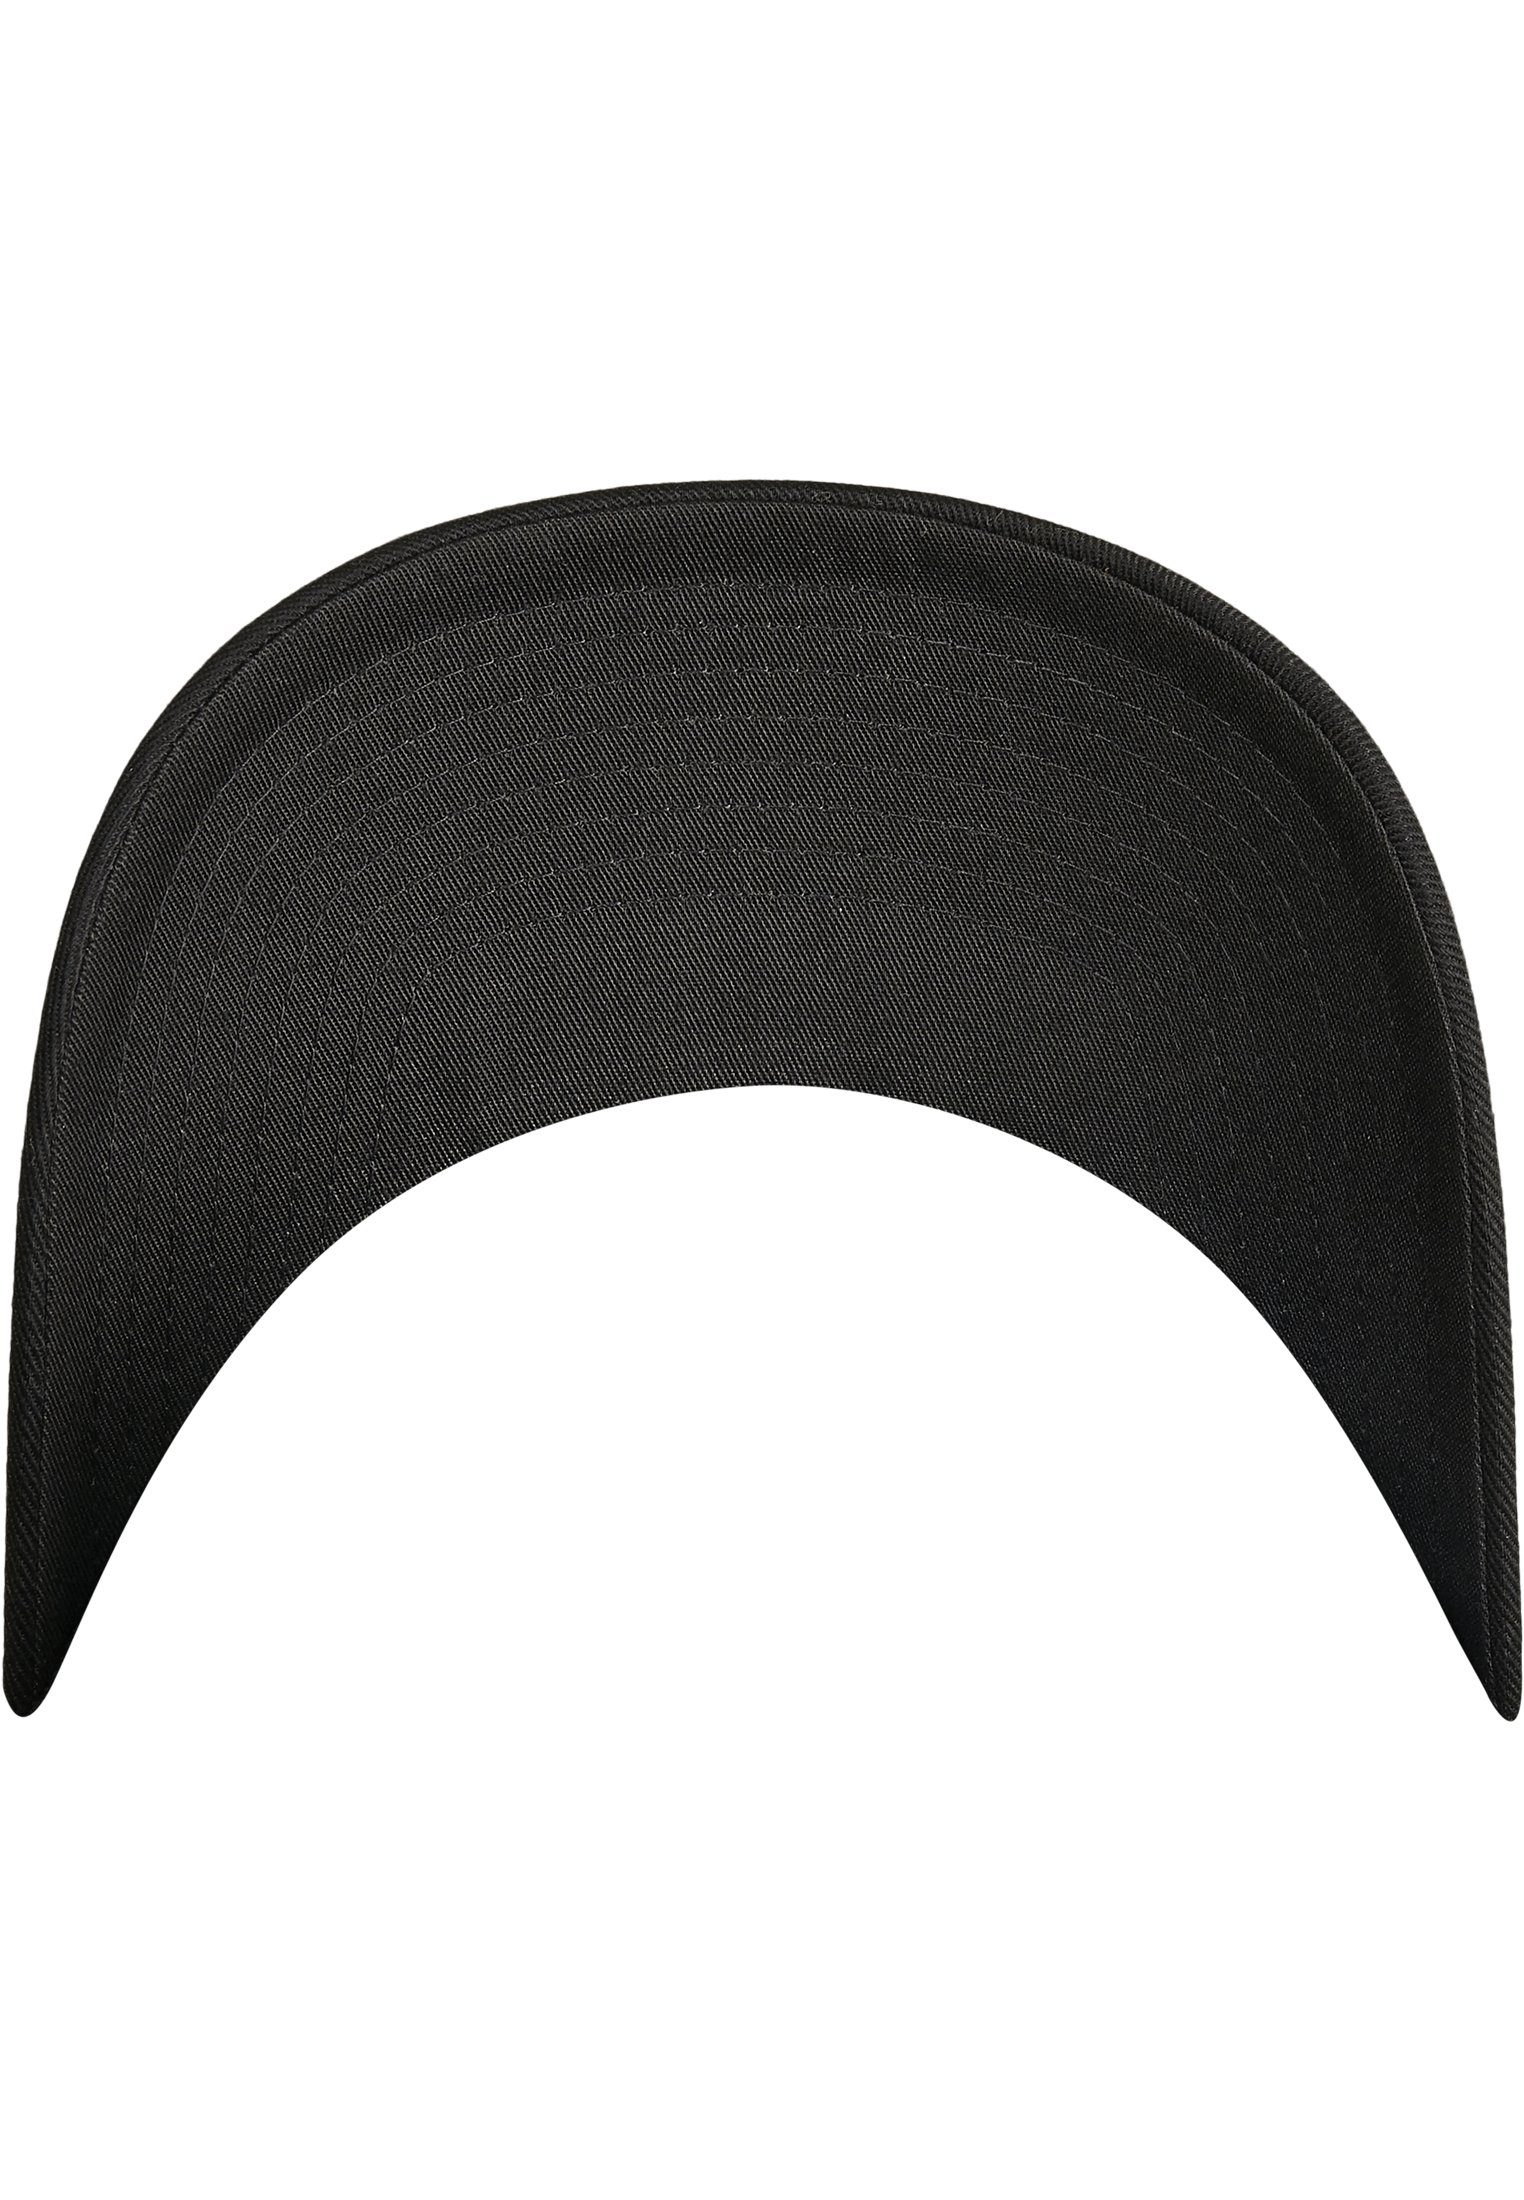 Flexfit Flex Cap Combed Flexfit Accessoires Wooly Adjustable black/black